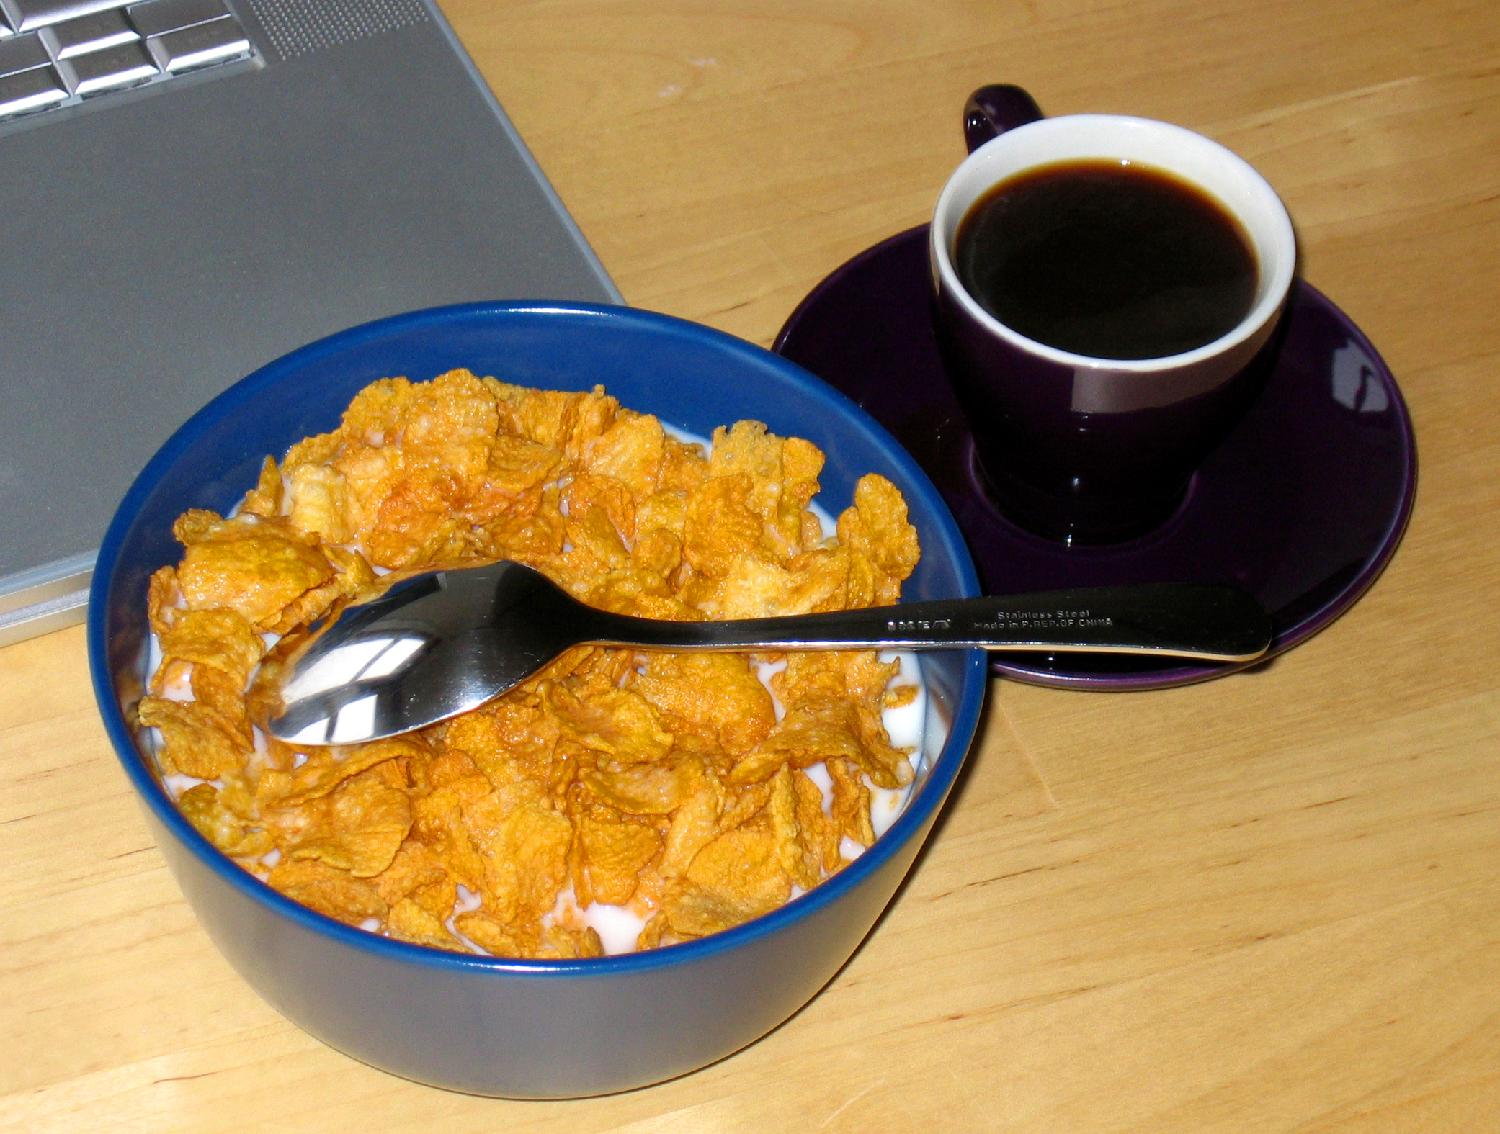 【breakfast_cereal】什么意思_英语breakfast_cereal